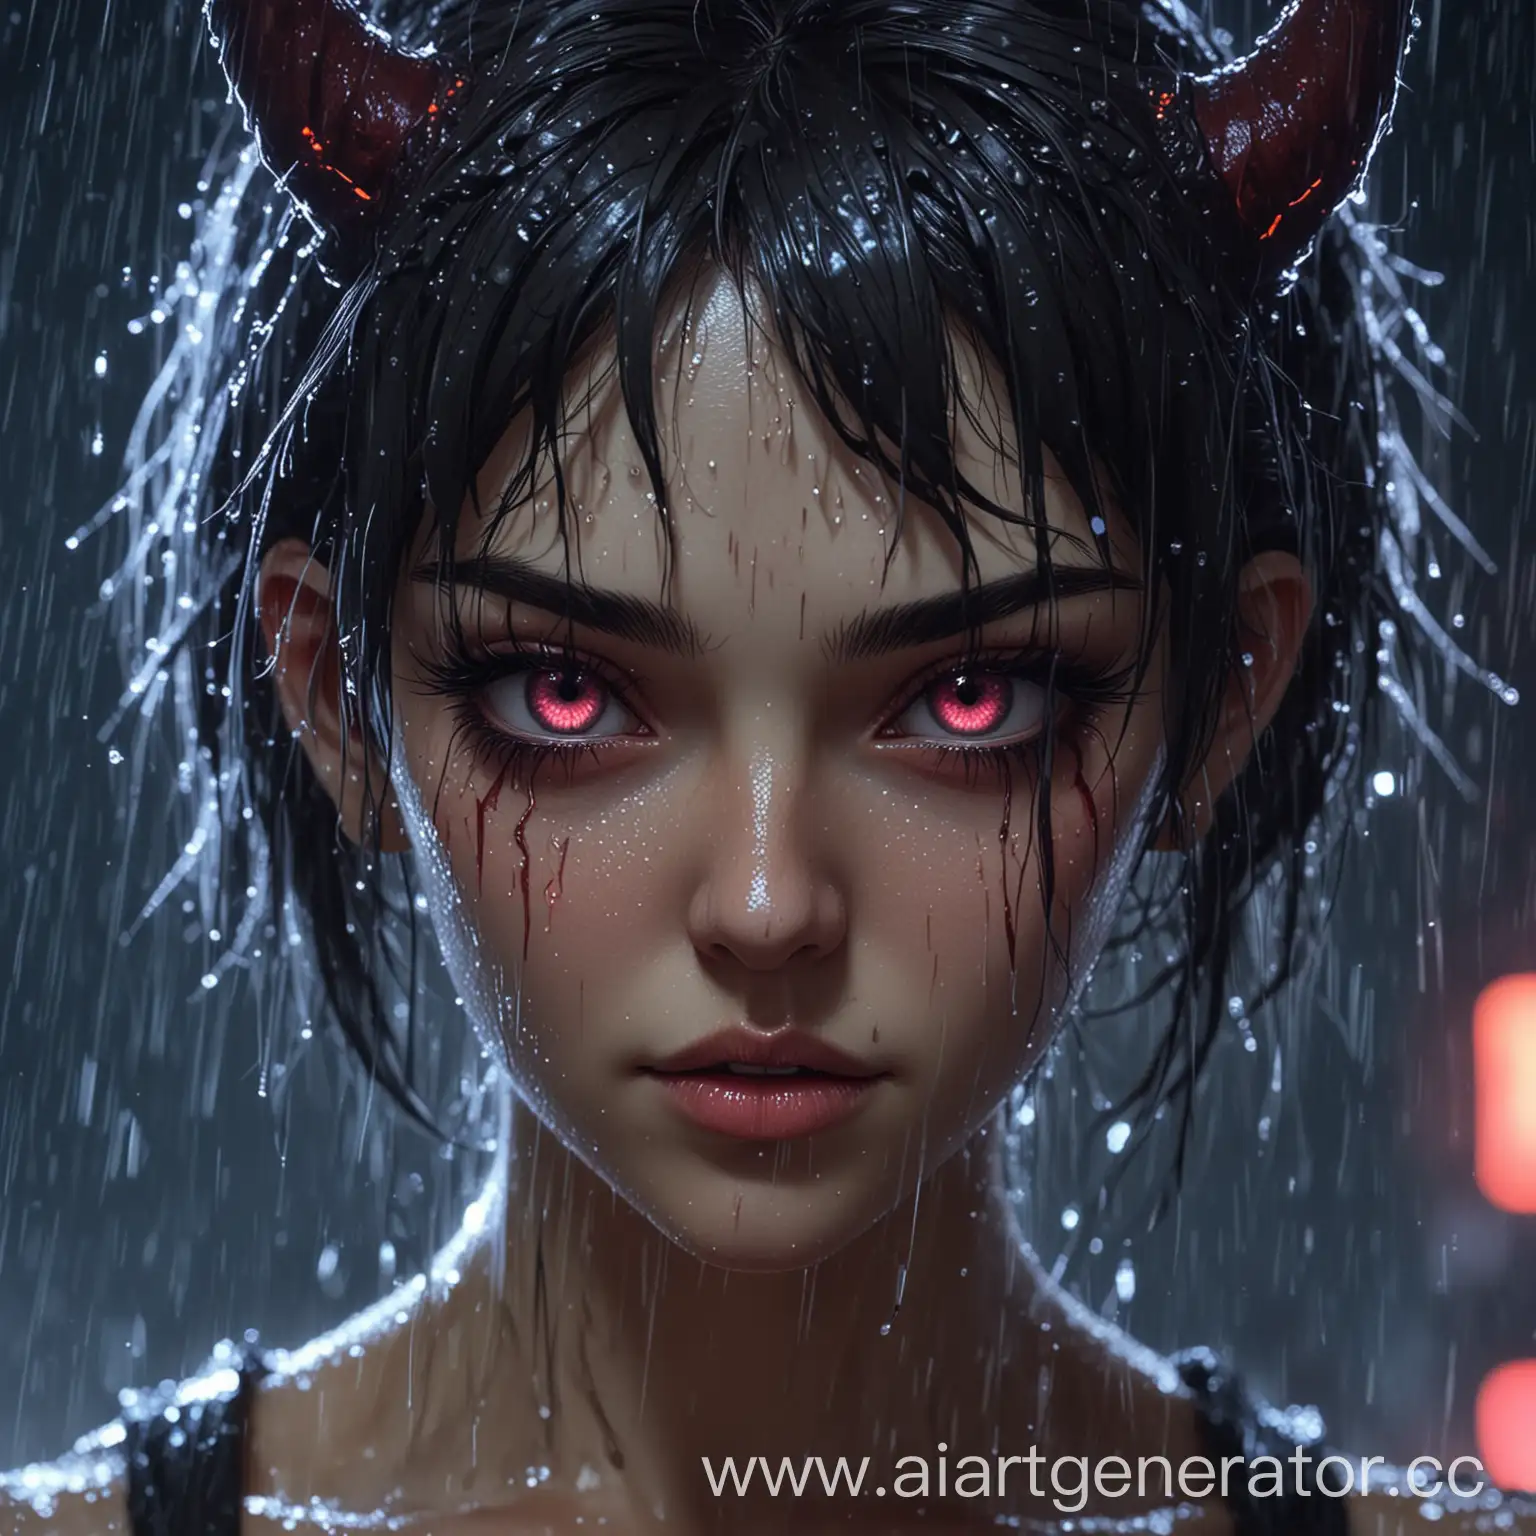 Лицо демона, женского пола, красивые глаза, в стиле аниме, неон, на заднем фоне дождь, ахэгао
